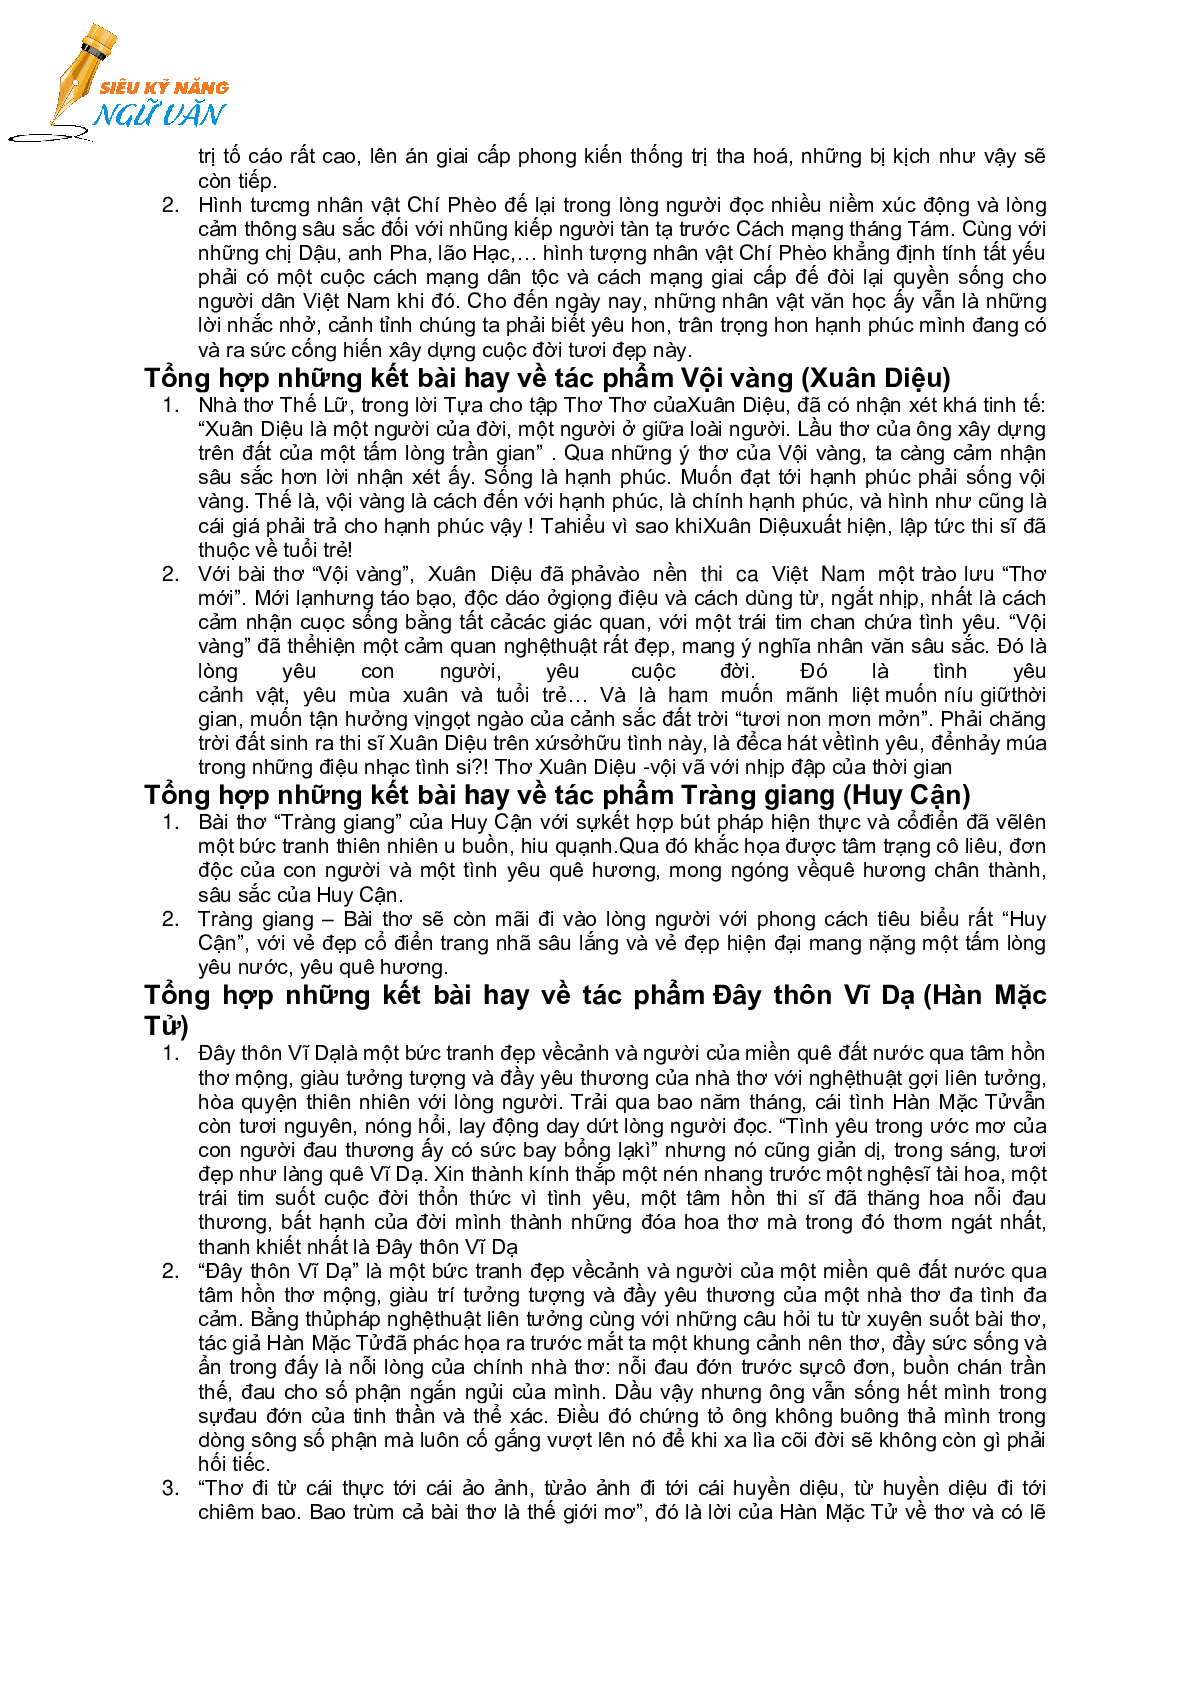 TỔNG HỢP CÁC KẾT BÀI TÁC PHẨM NGỮ VĂN LỚP 11 (trang 2)